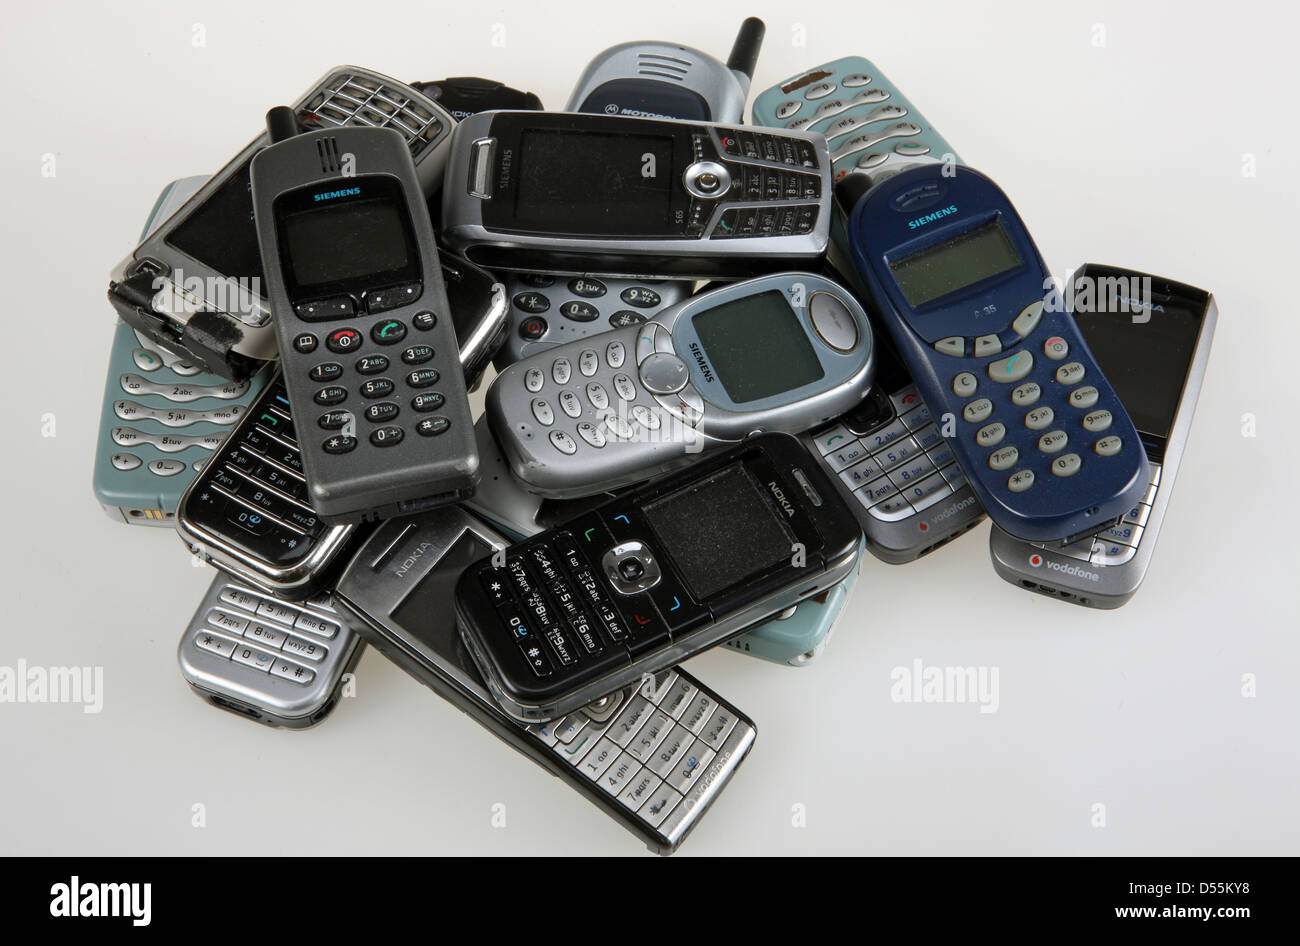 Teléfonos celulares antiguos fotografías e imágenes de alta resolución -  Alamy